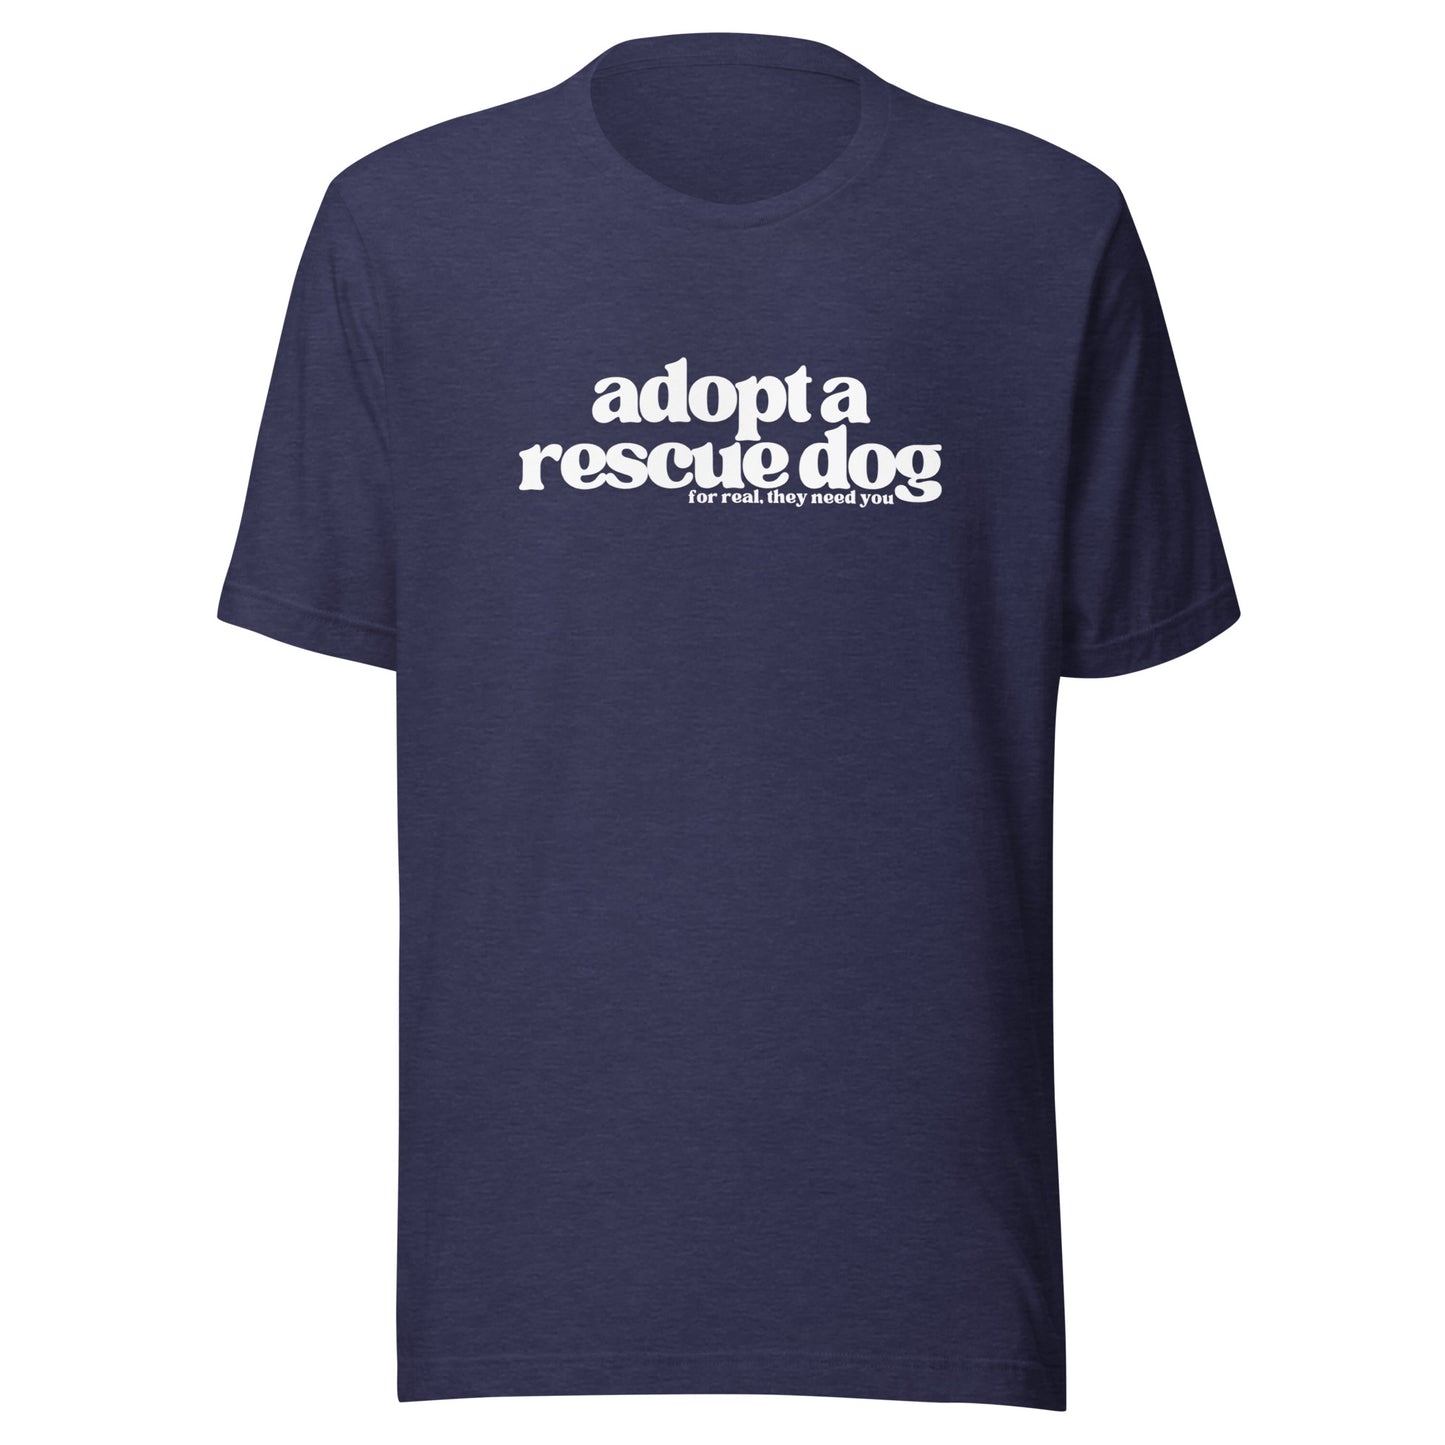 The Adopt a Rescue Dog shirt